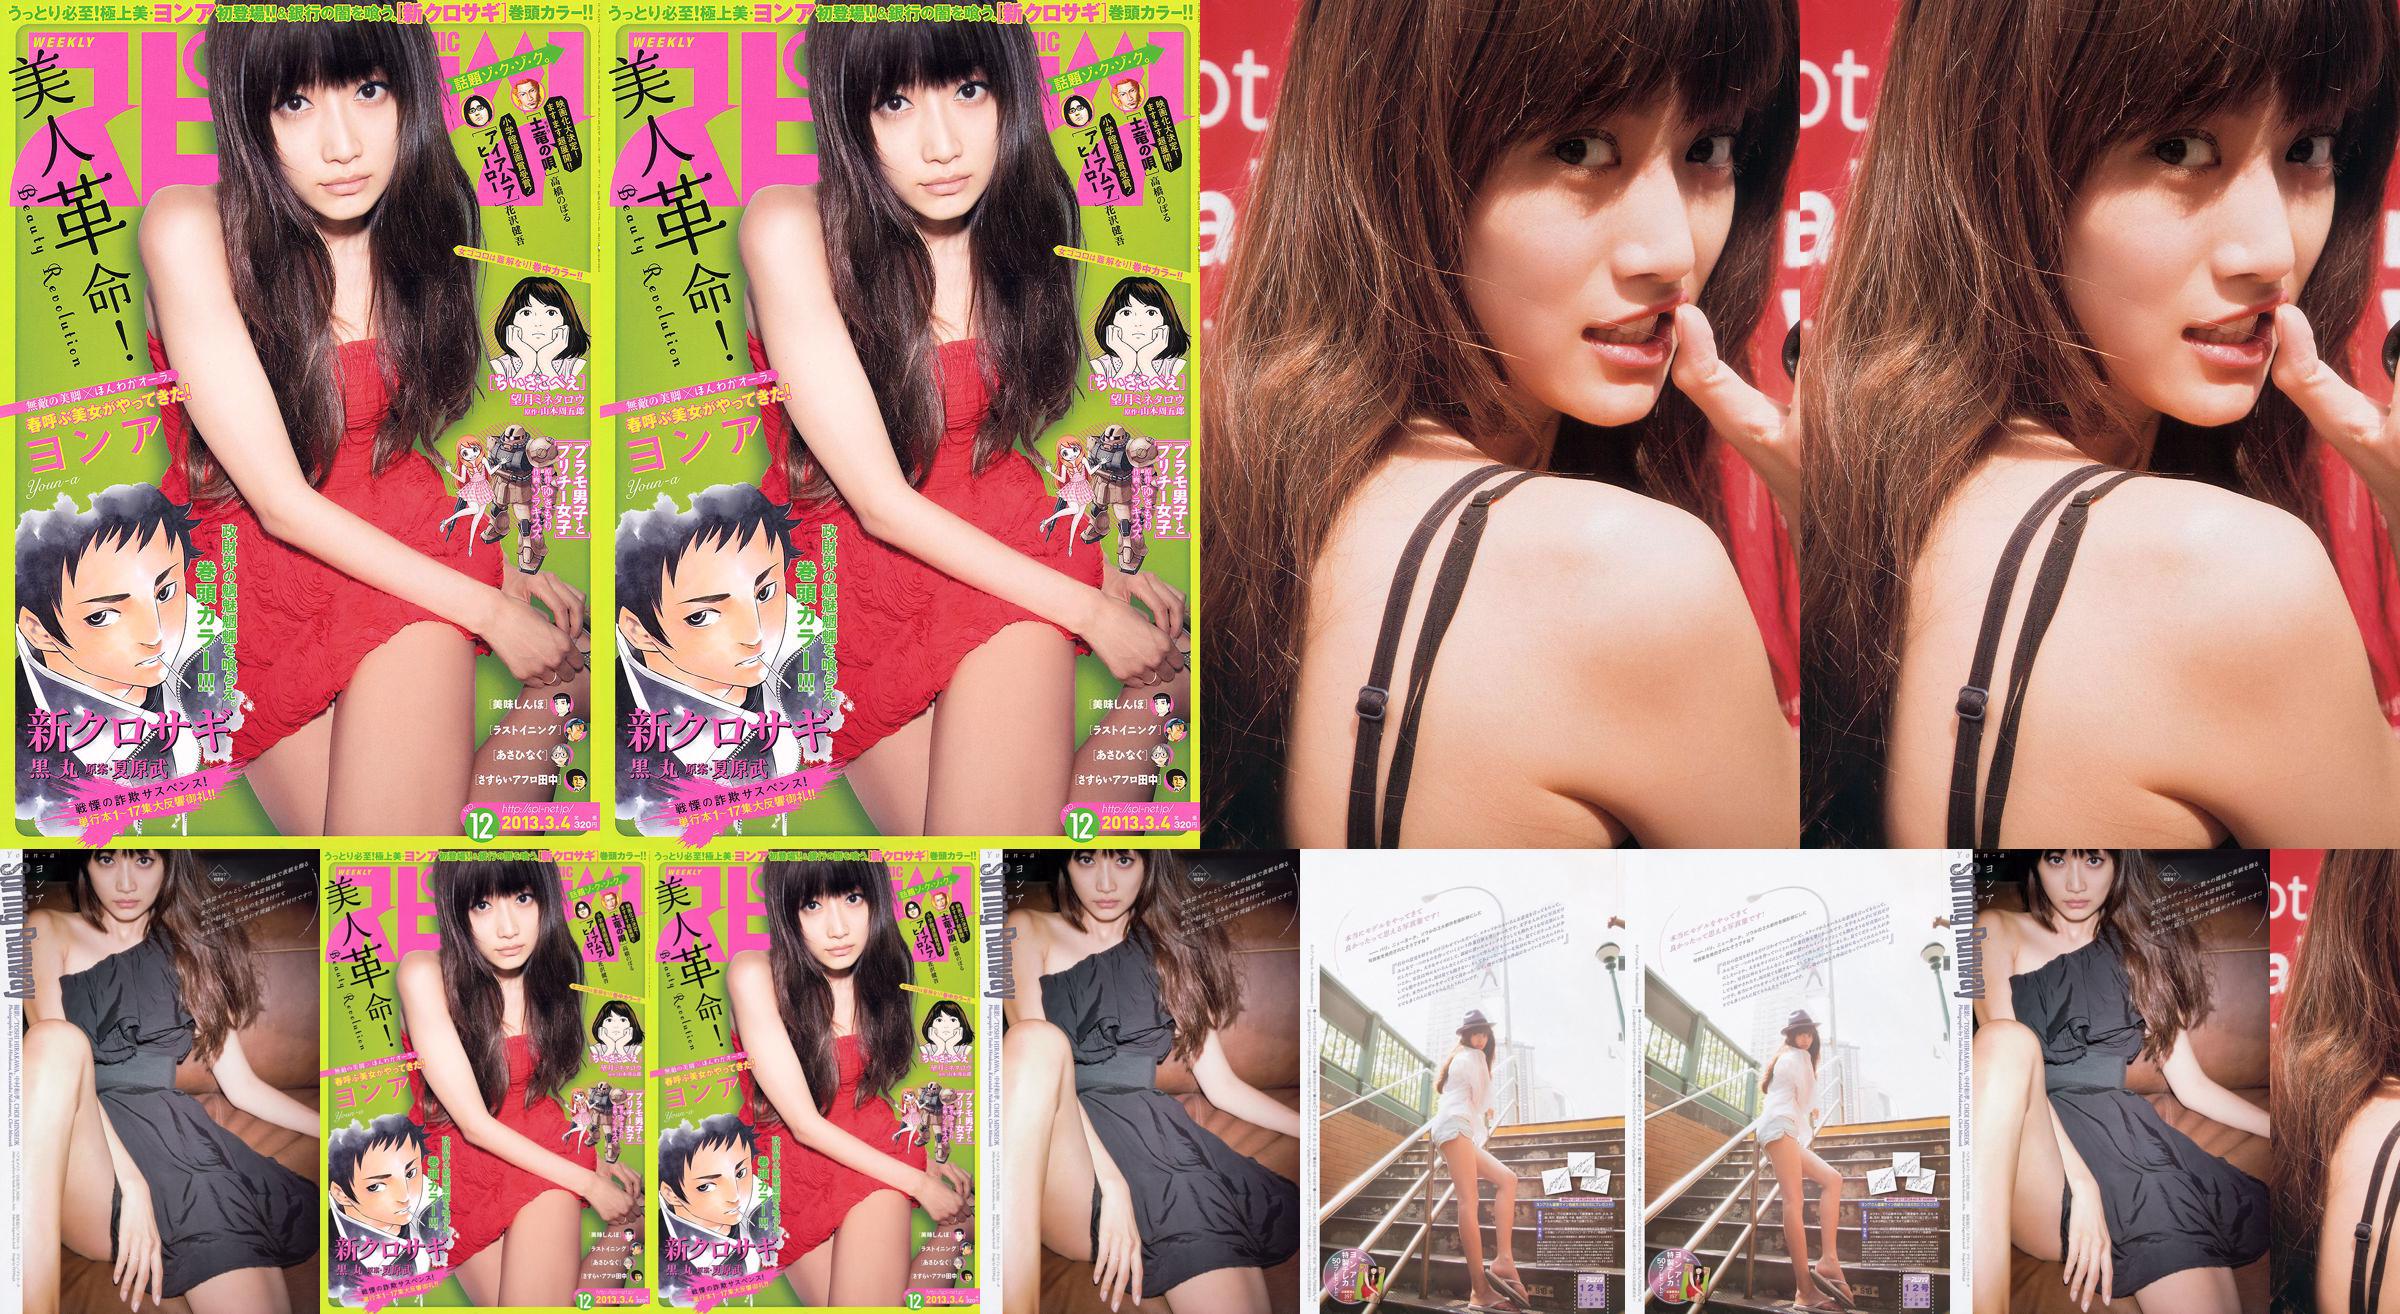 [Wöchentliche Big Comic Spirits] No. ン No. 2013 No.12 Photo Magazine No.6172f7 Seite 1